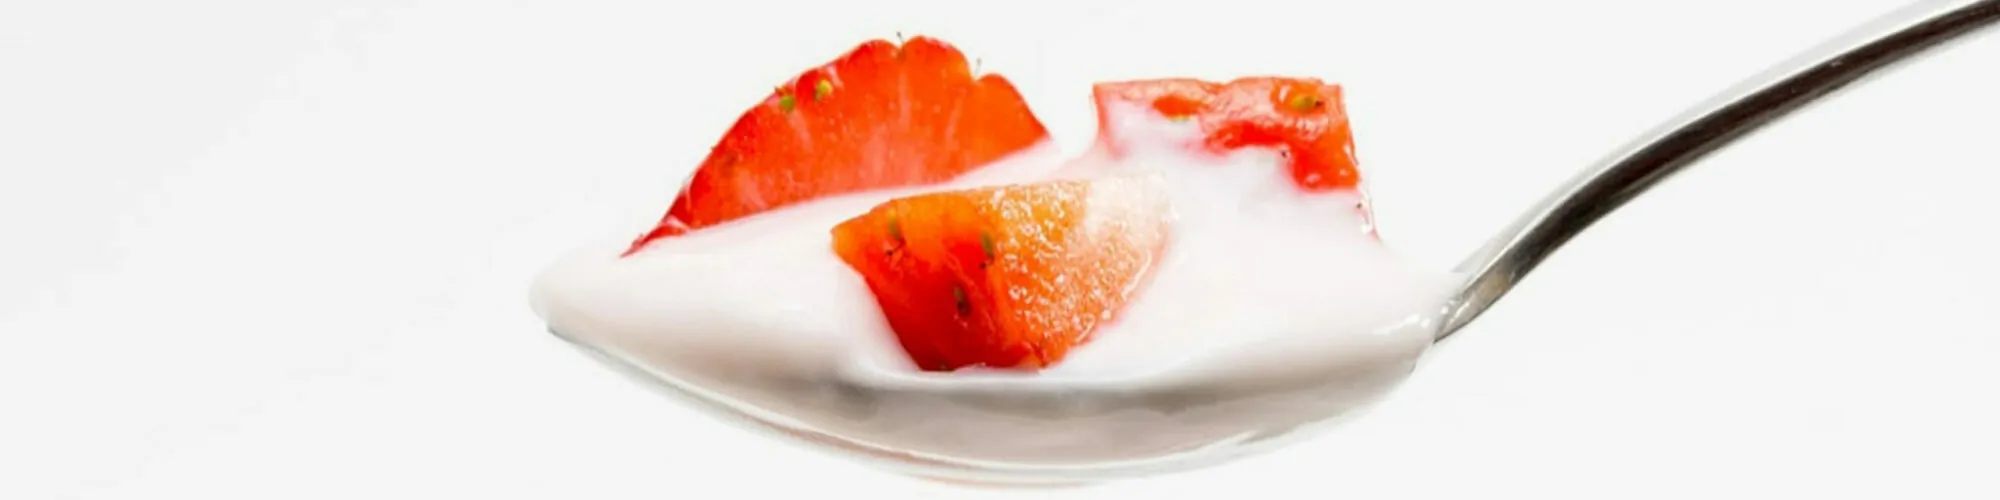 Bild von einem Löffel mit Joghurt und Erdbeeren, valantic Case Study Müller